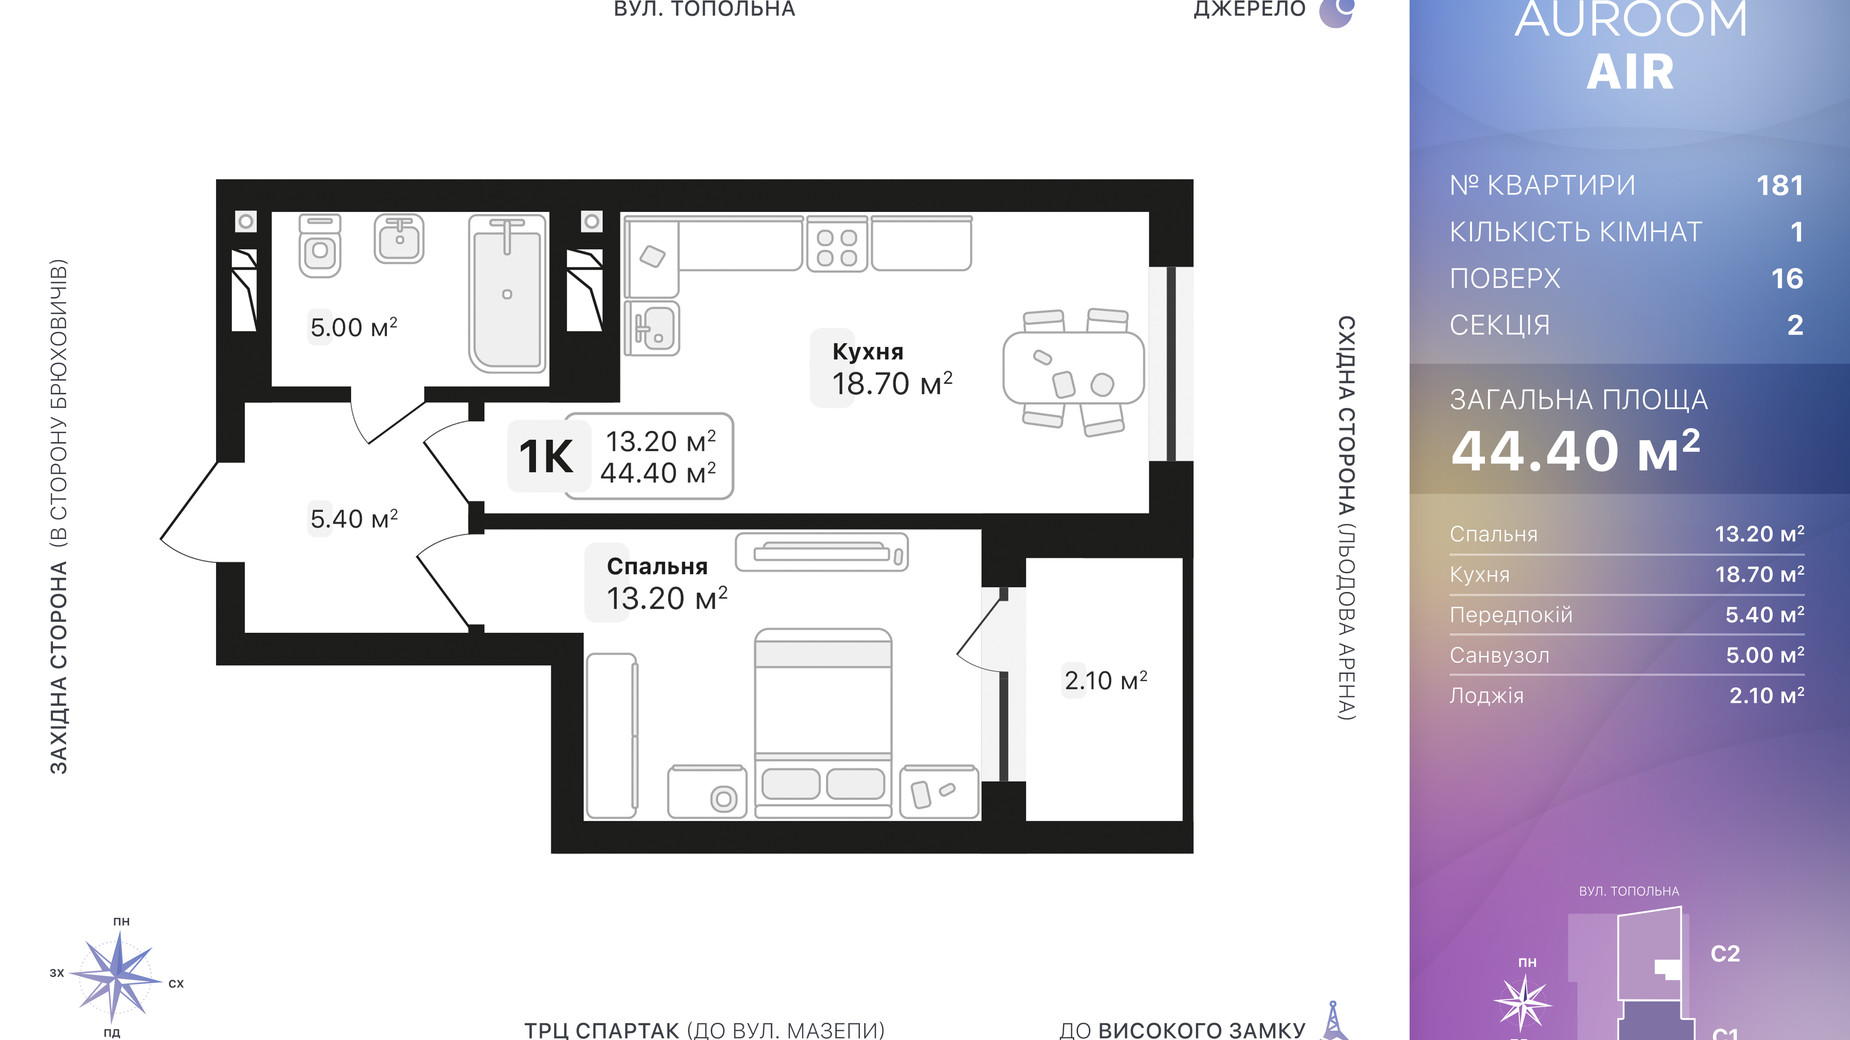 Планировка 1-комнатной квартиры в ЖК Auroom Air 44.4 м², фото 552448